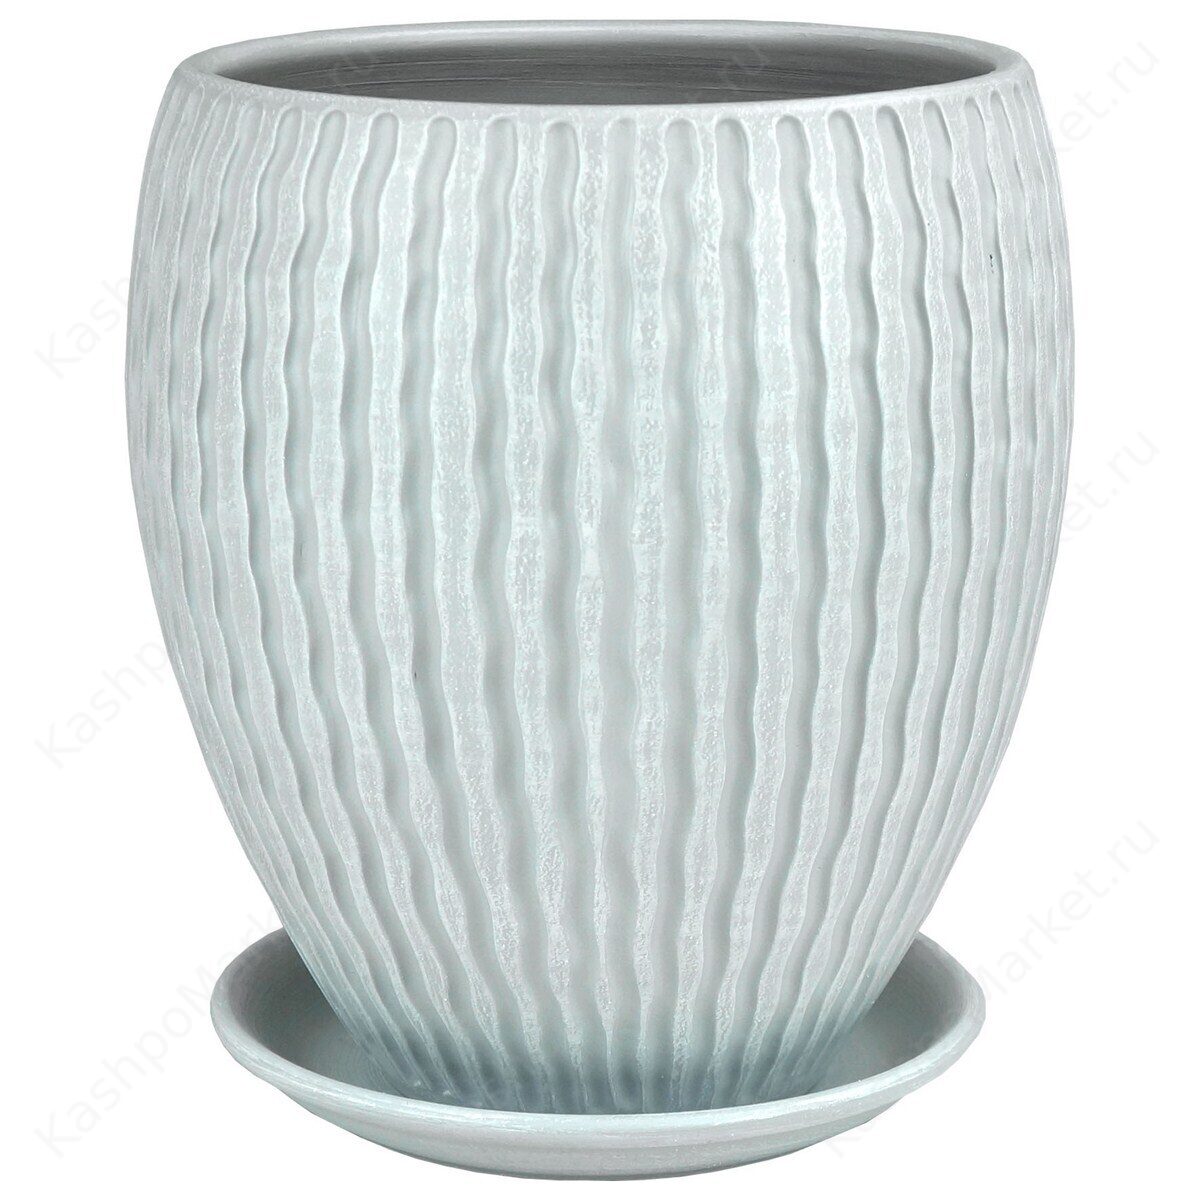 Горшок для цветов Мане конус керамический бело-серый (21 см) - 46-318